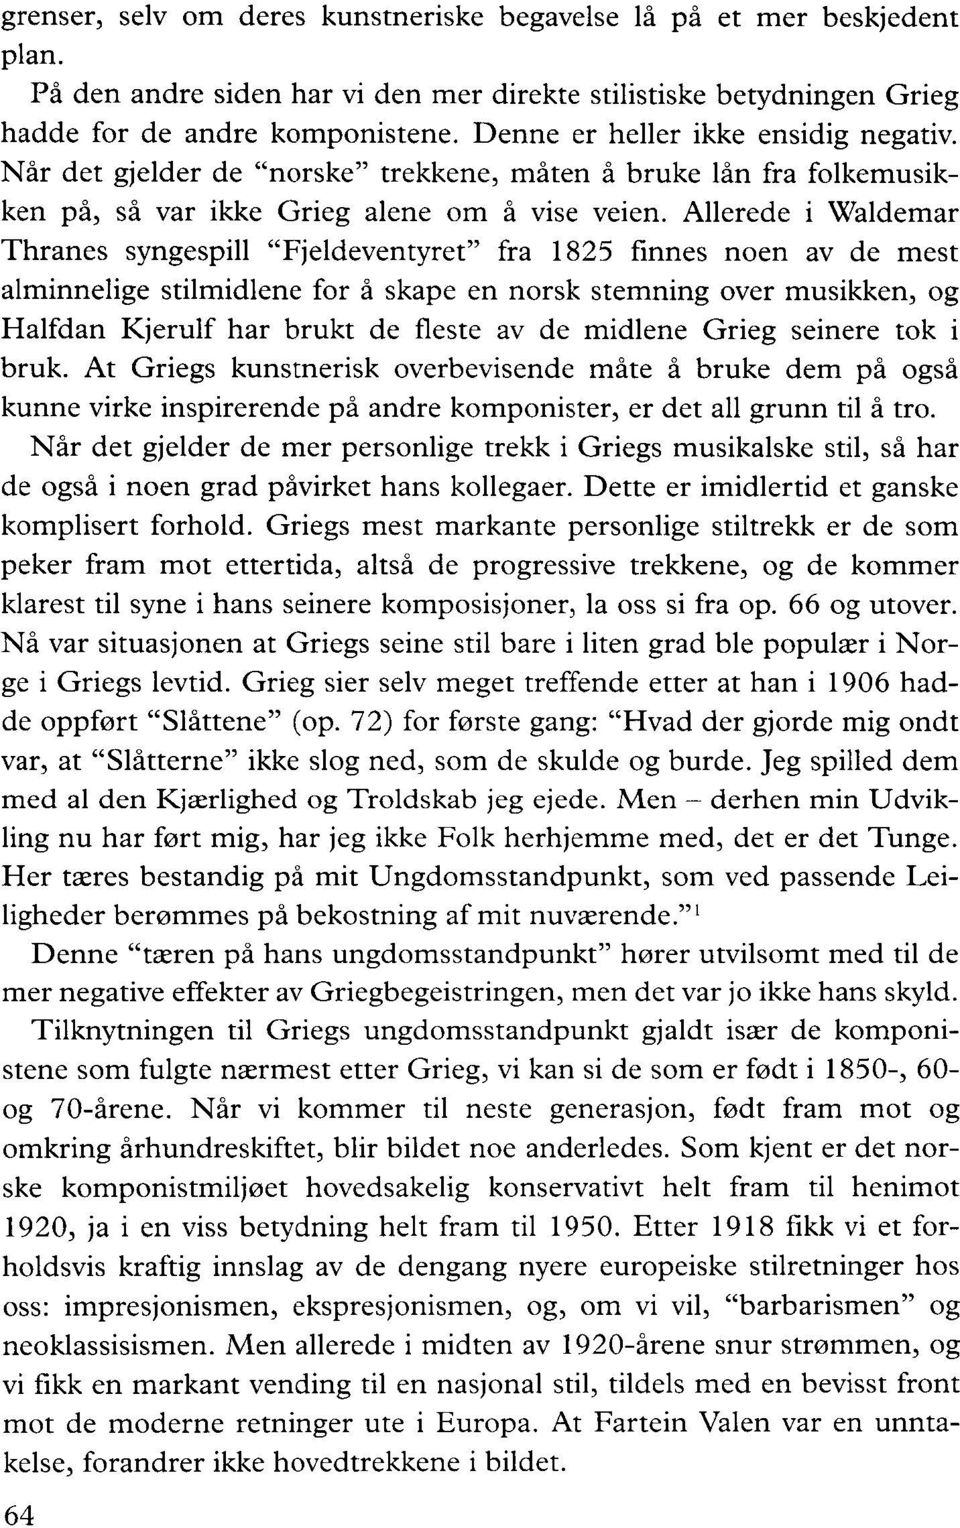 Allerede i Waldemar Thranes syngespill "Fjeldeventyret" fra 1825 finnes no en av de mest alminnelige stilmidlene for å skape en norsk stemning over musikken, og Halfdan Kjerulf har brukt de fleste av